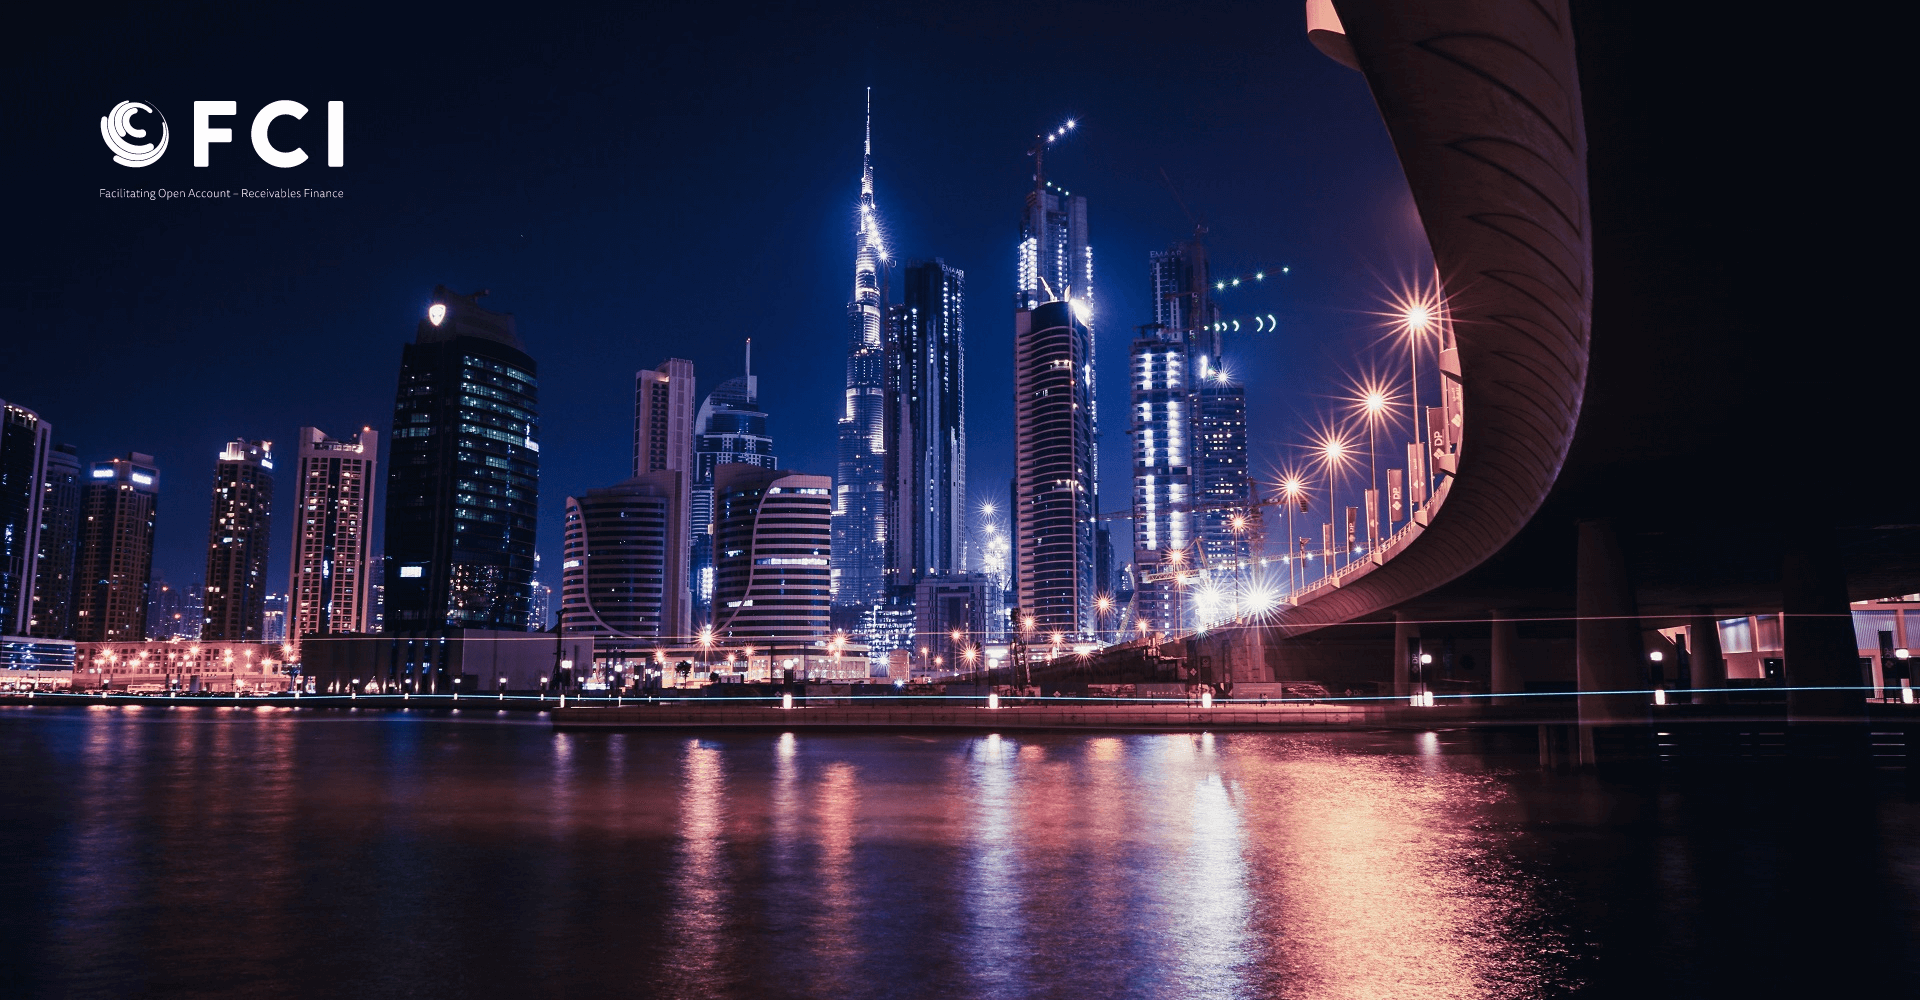 Codix at Финансирование факторинга и дебиторской задолженности региональная мастерская, Дубай, ОАЭ